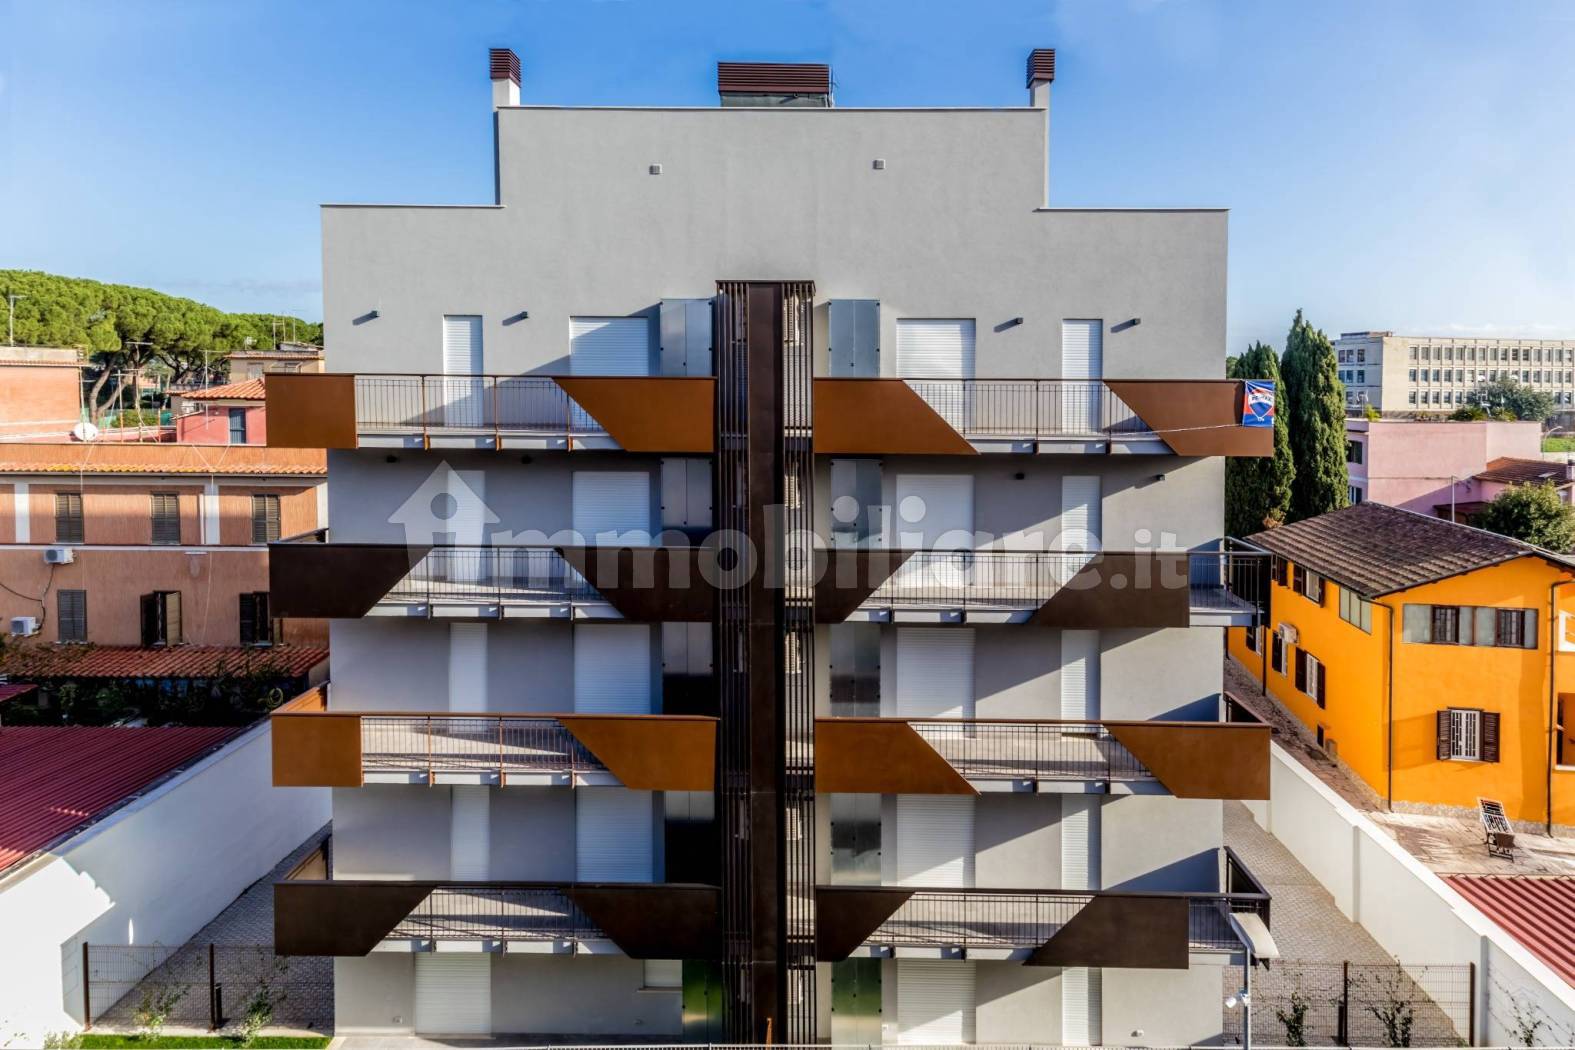 Affitto Appartamento Roma. Trilocale in via Stanislao Cannizzaro 21/C.  Nuovo, quarto piano, posto auto, con balcone, riscaldamento autonomo, rif.  102928622